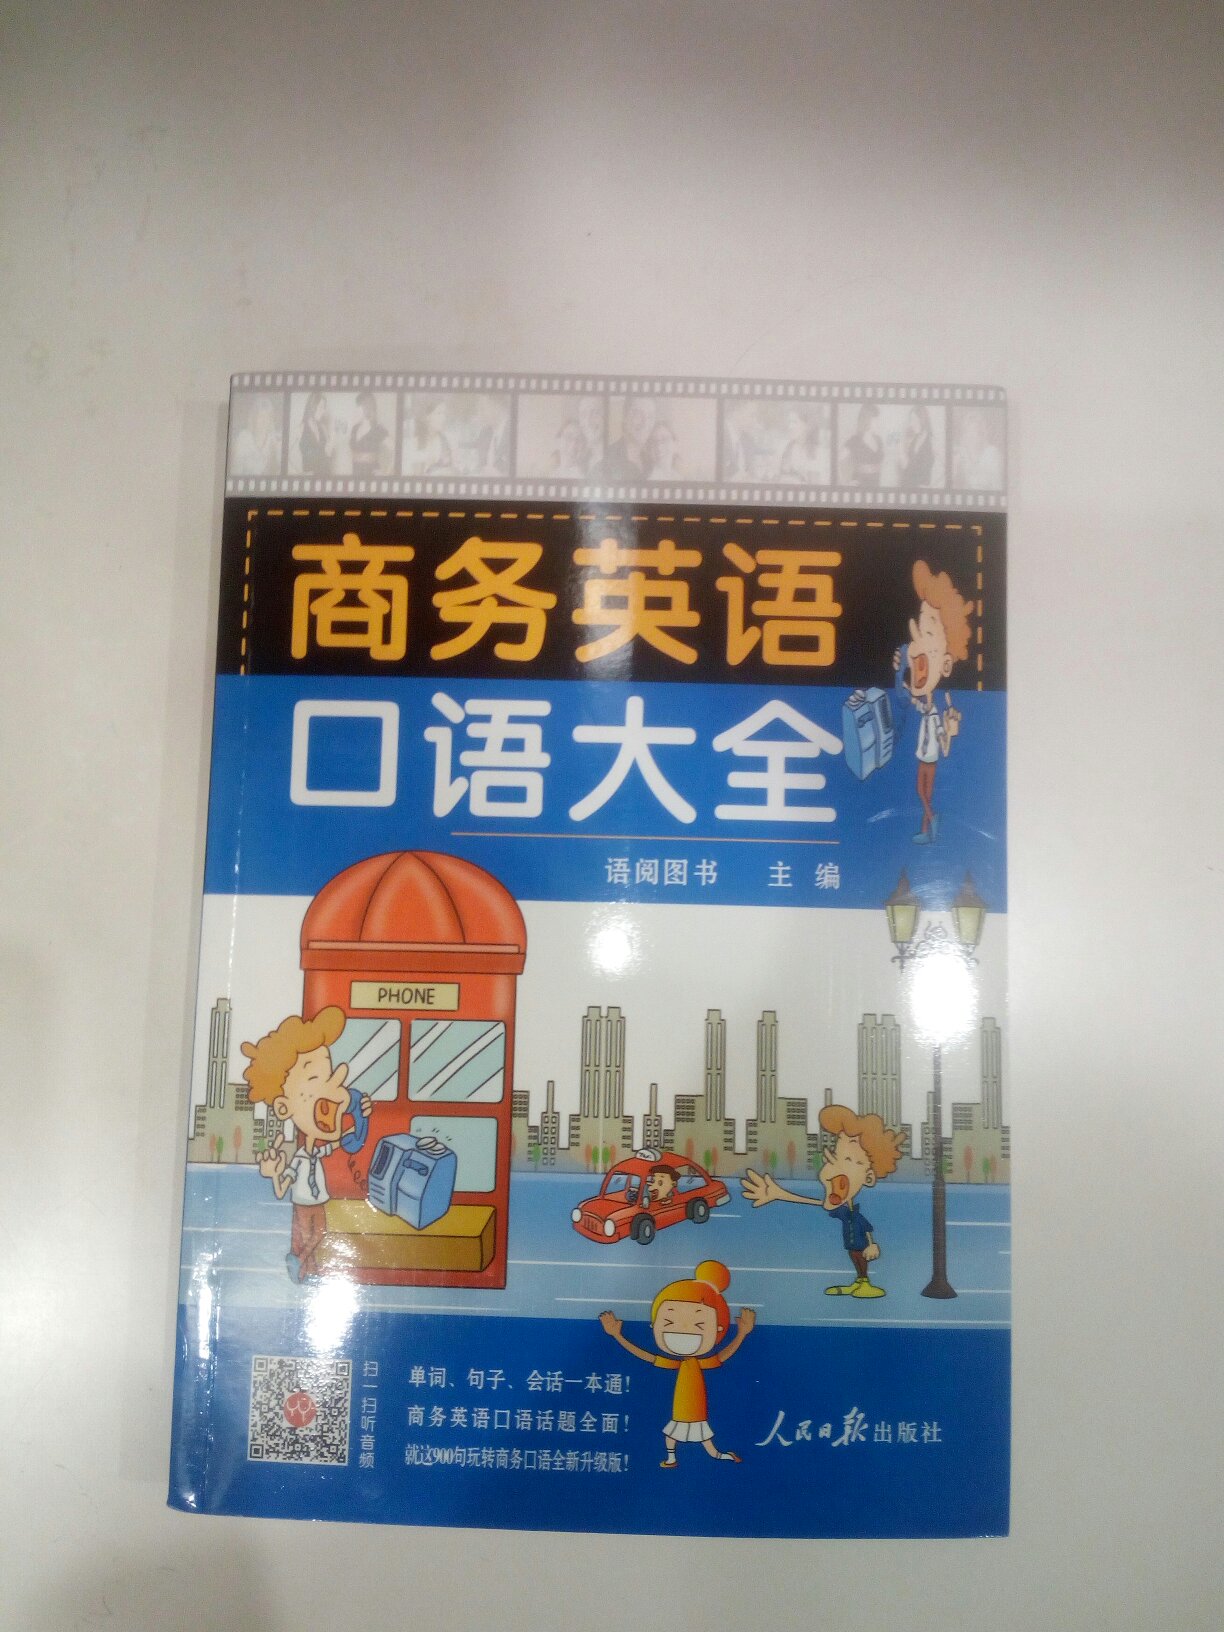 书的质量不错，纸张很好，内容很丰富。继续学习英语中。